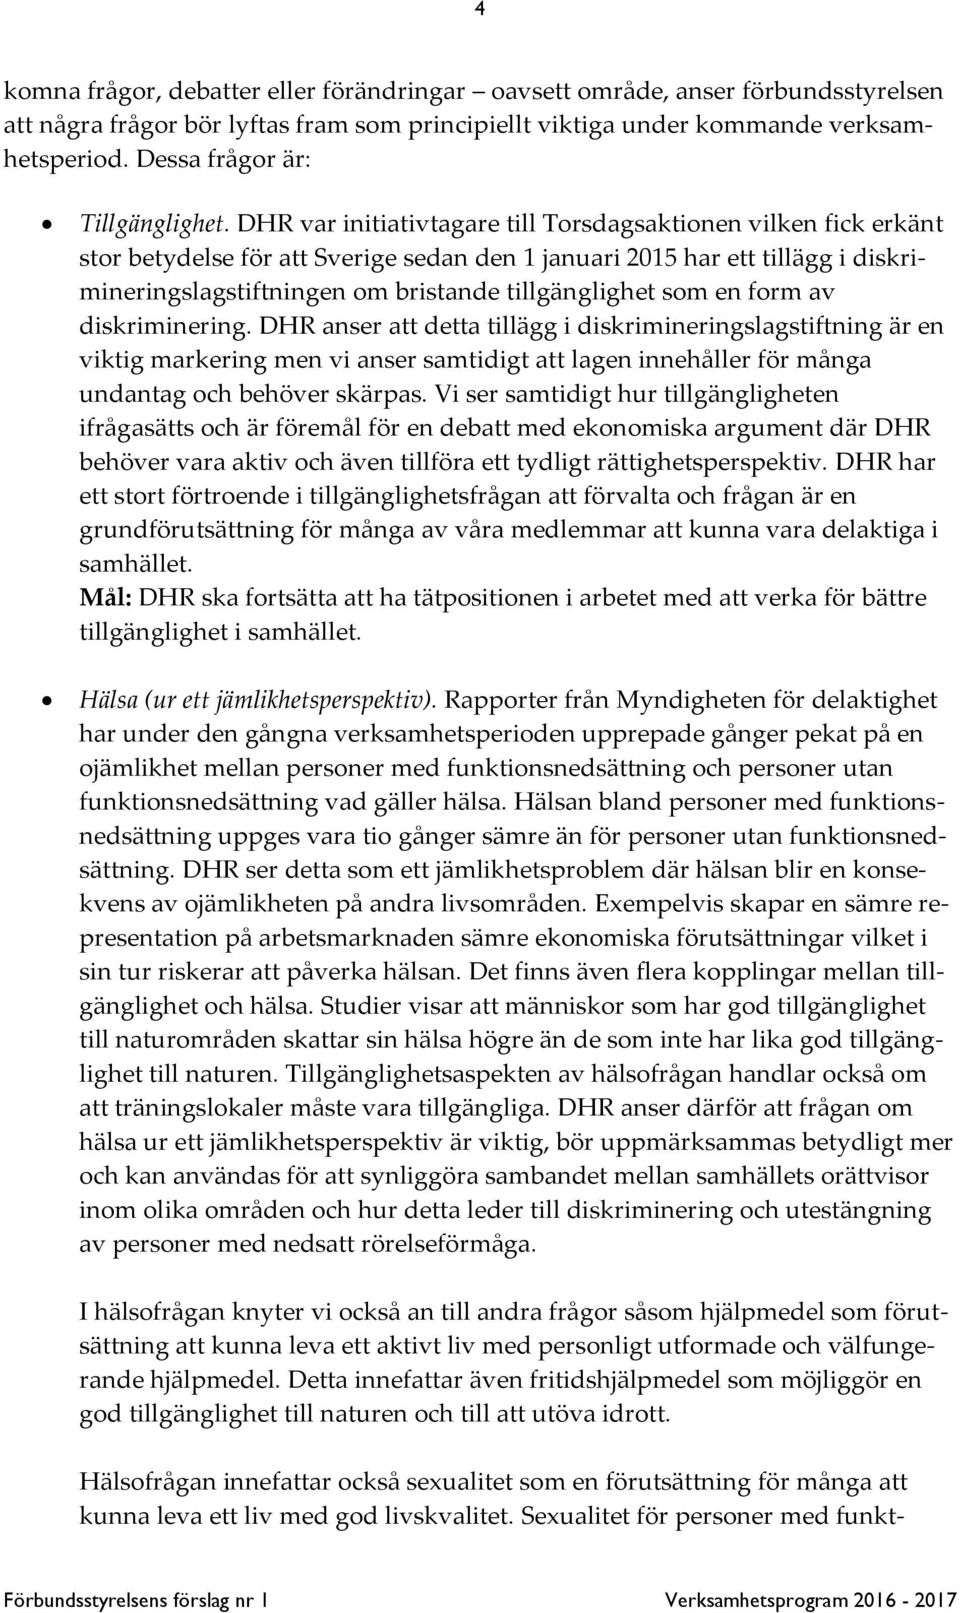 DHR var initiativtagare till Torsdagsaktionen vilken fick erkänt stor betydelse för att Sverige sedan den 1 januari 2015 har ett tillägg i diskrimineringslagstiftningen om bristande tillgänglighet